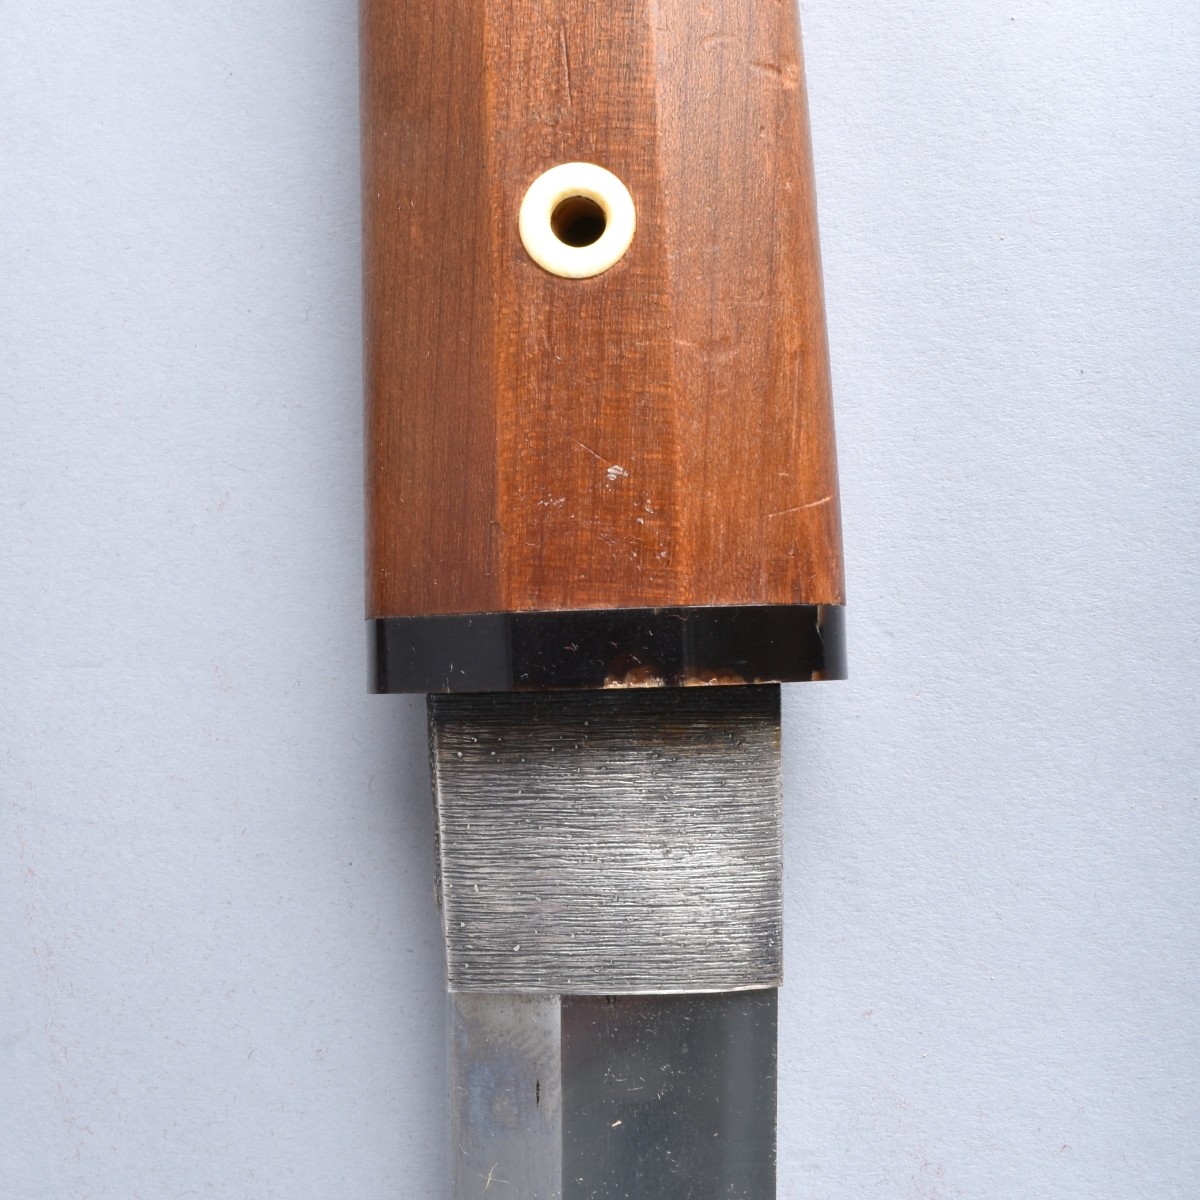 Japanese Katana Sword